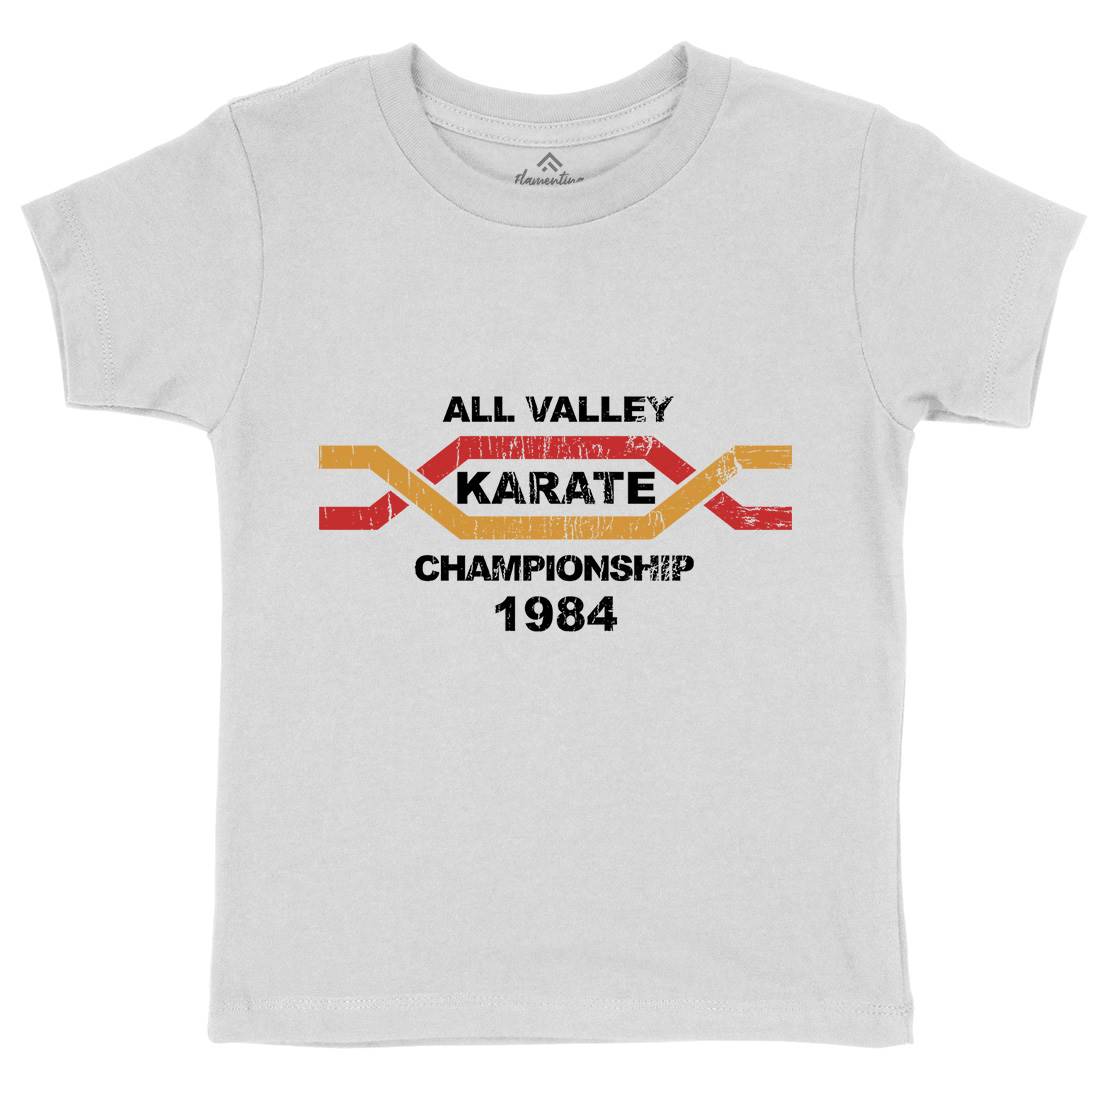 All Valley Kids Crew Neck T-Shirt Sport D251